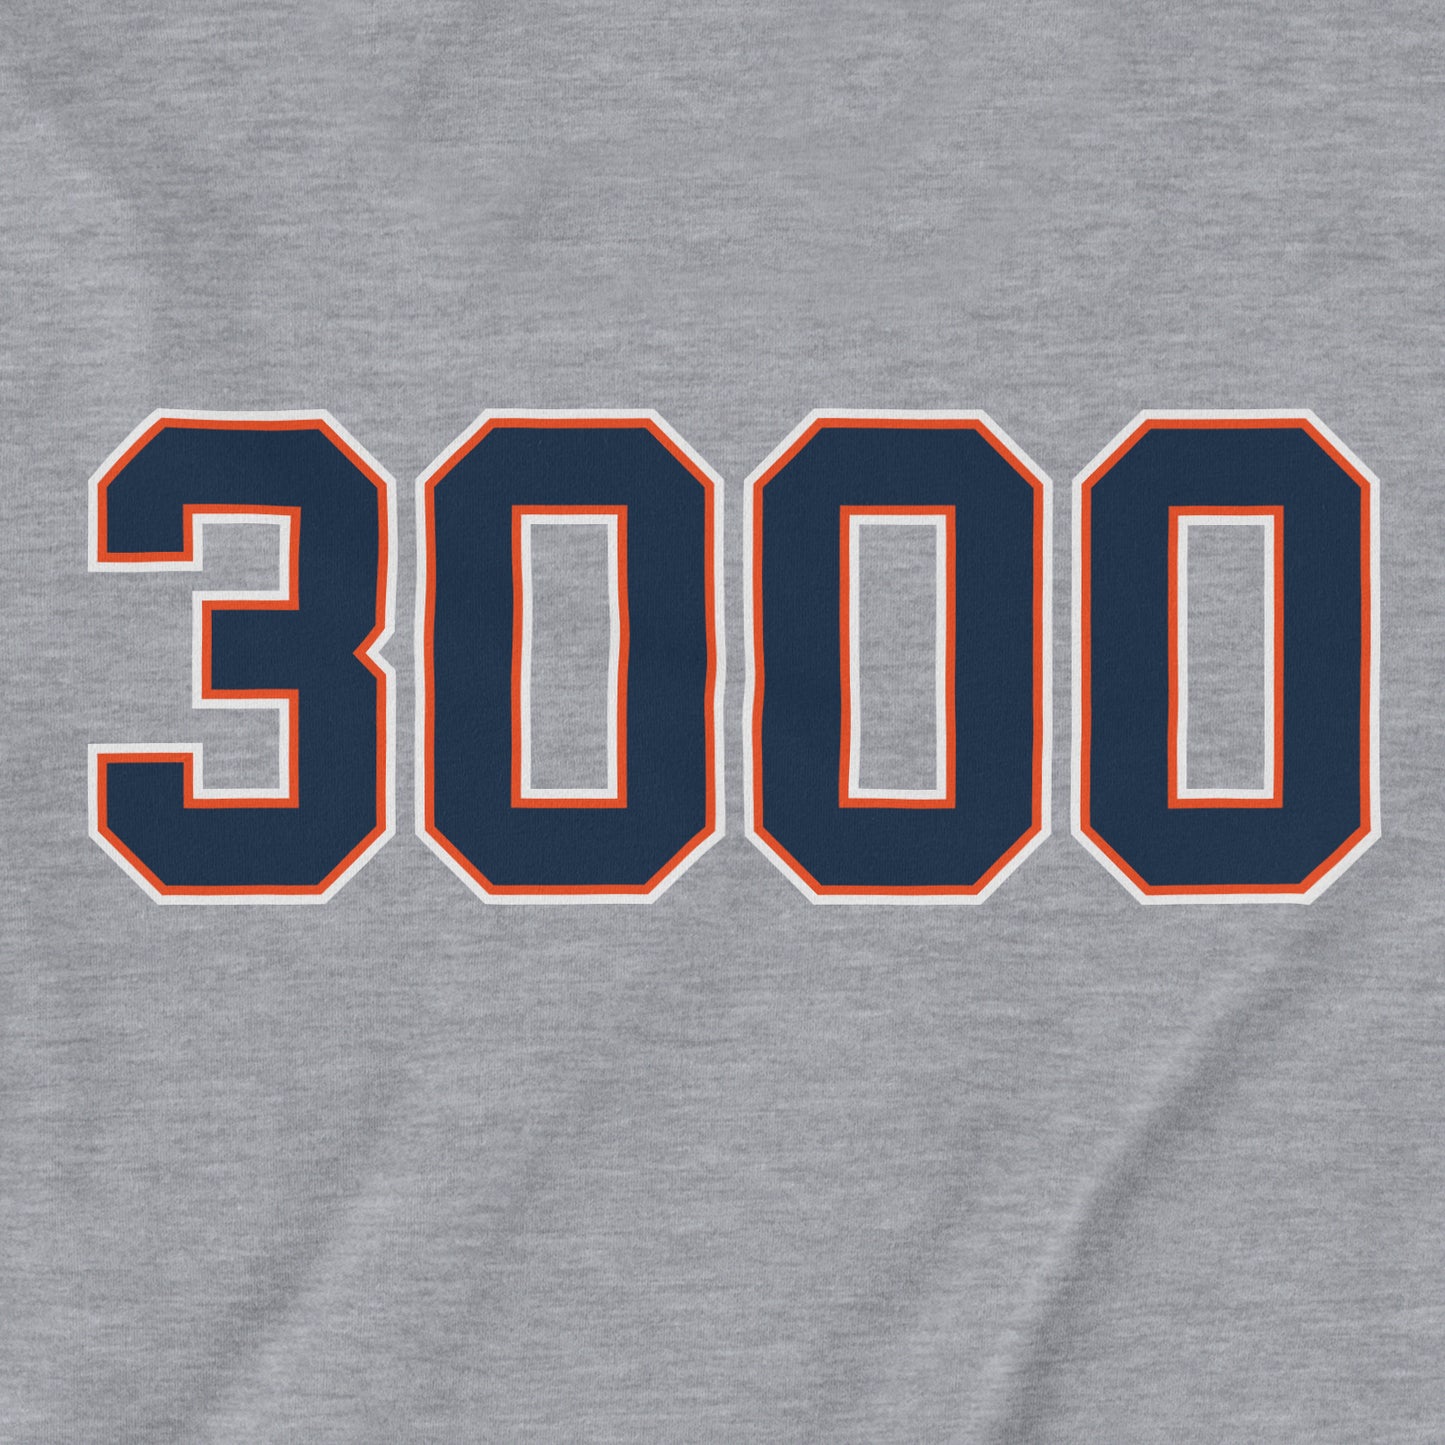 3,000 | T-Shirt